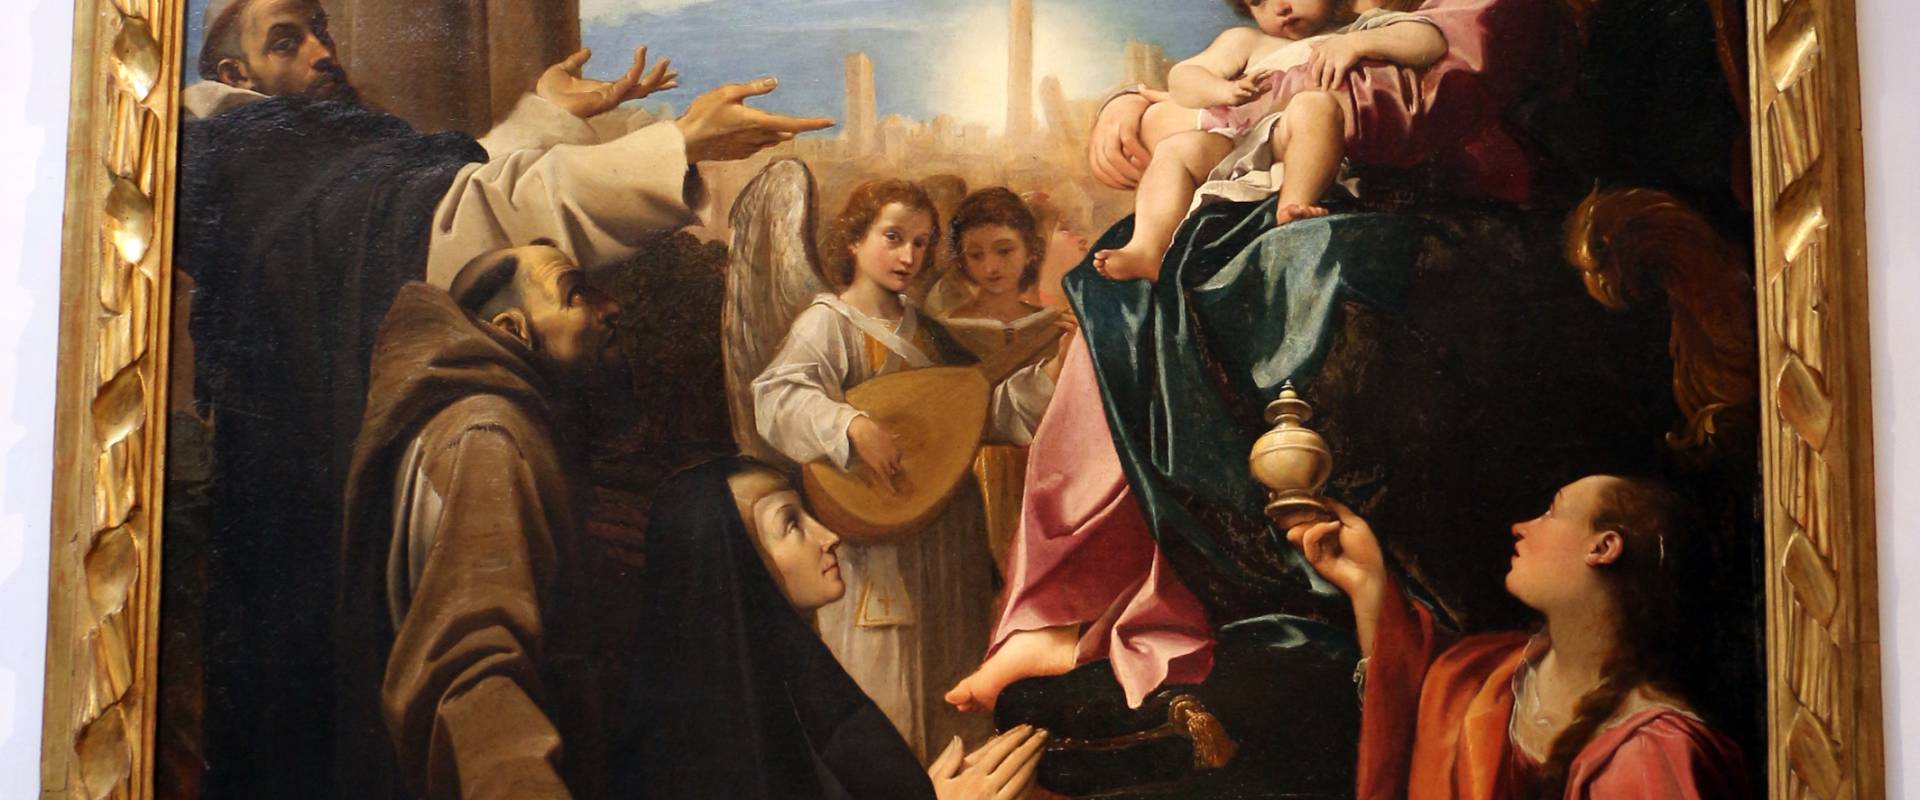 Ludovico carracci, madonna in trono e santi, 1588, dai ss. giacomo e filippo detto le convertite, 01 photo by Sailko